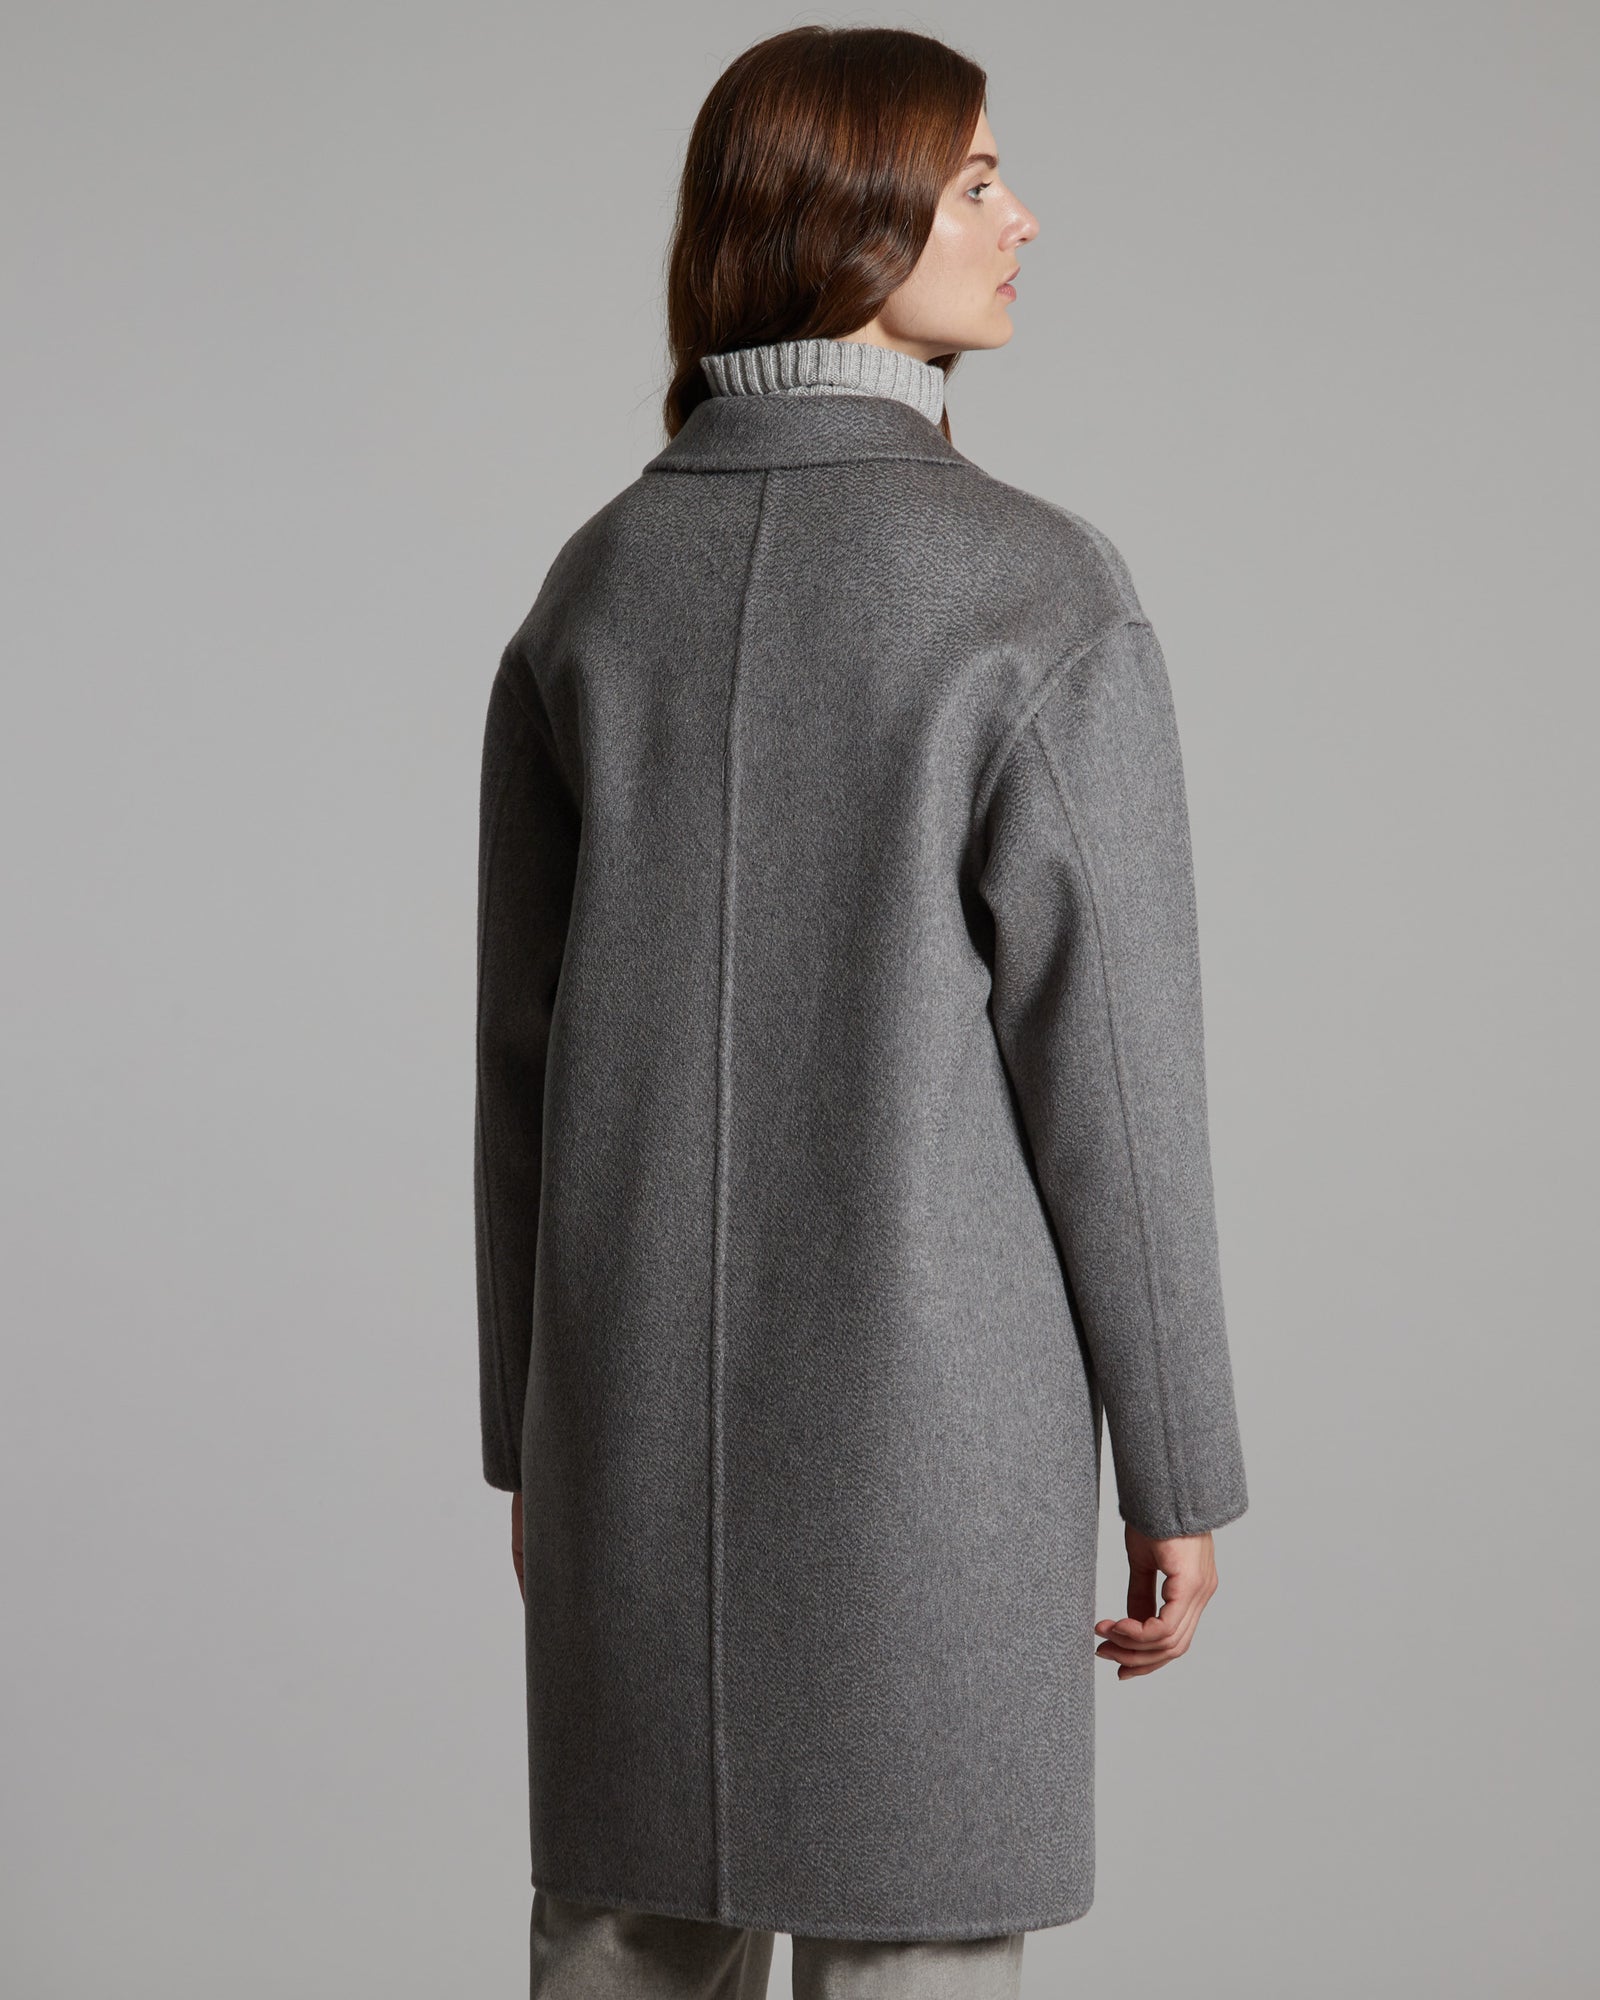 Double melange Grey Cashmere coat